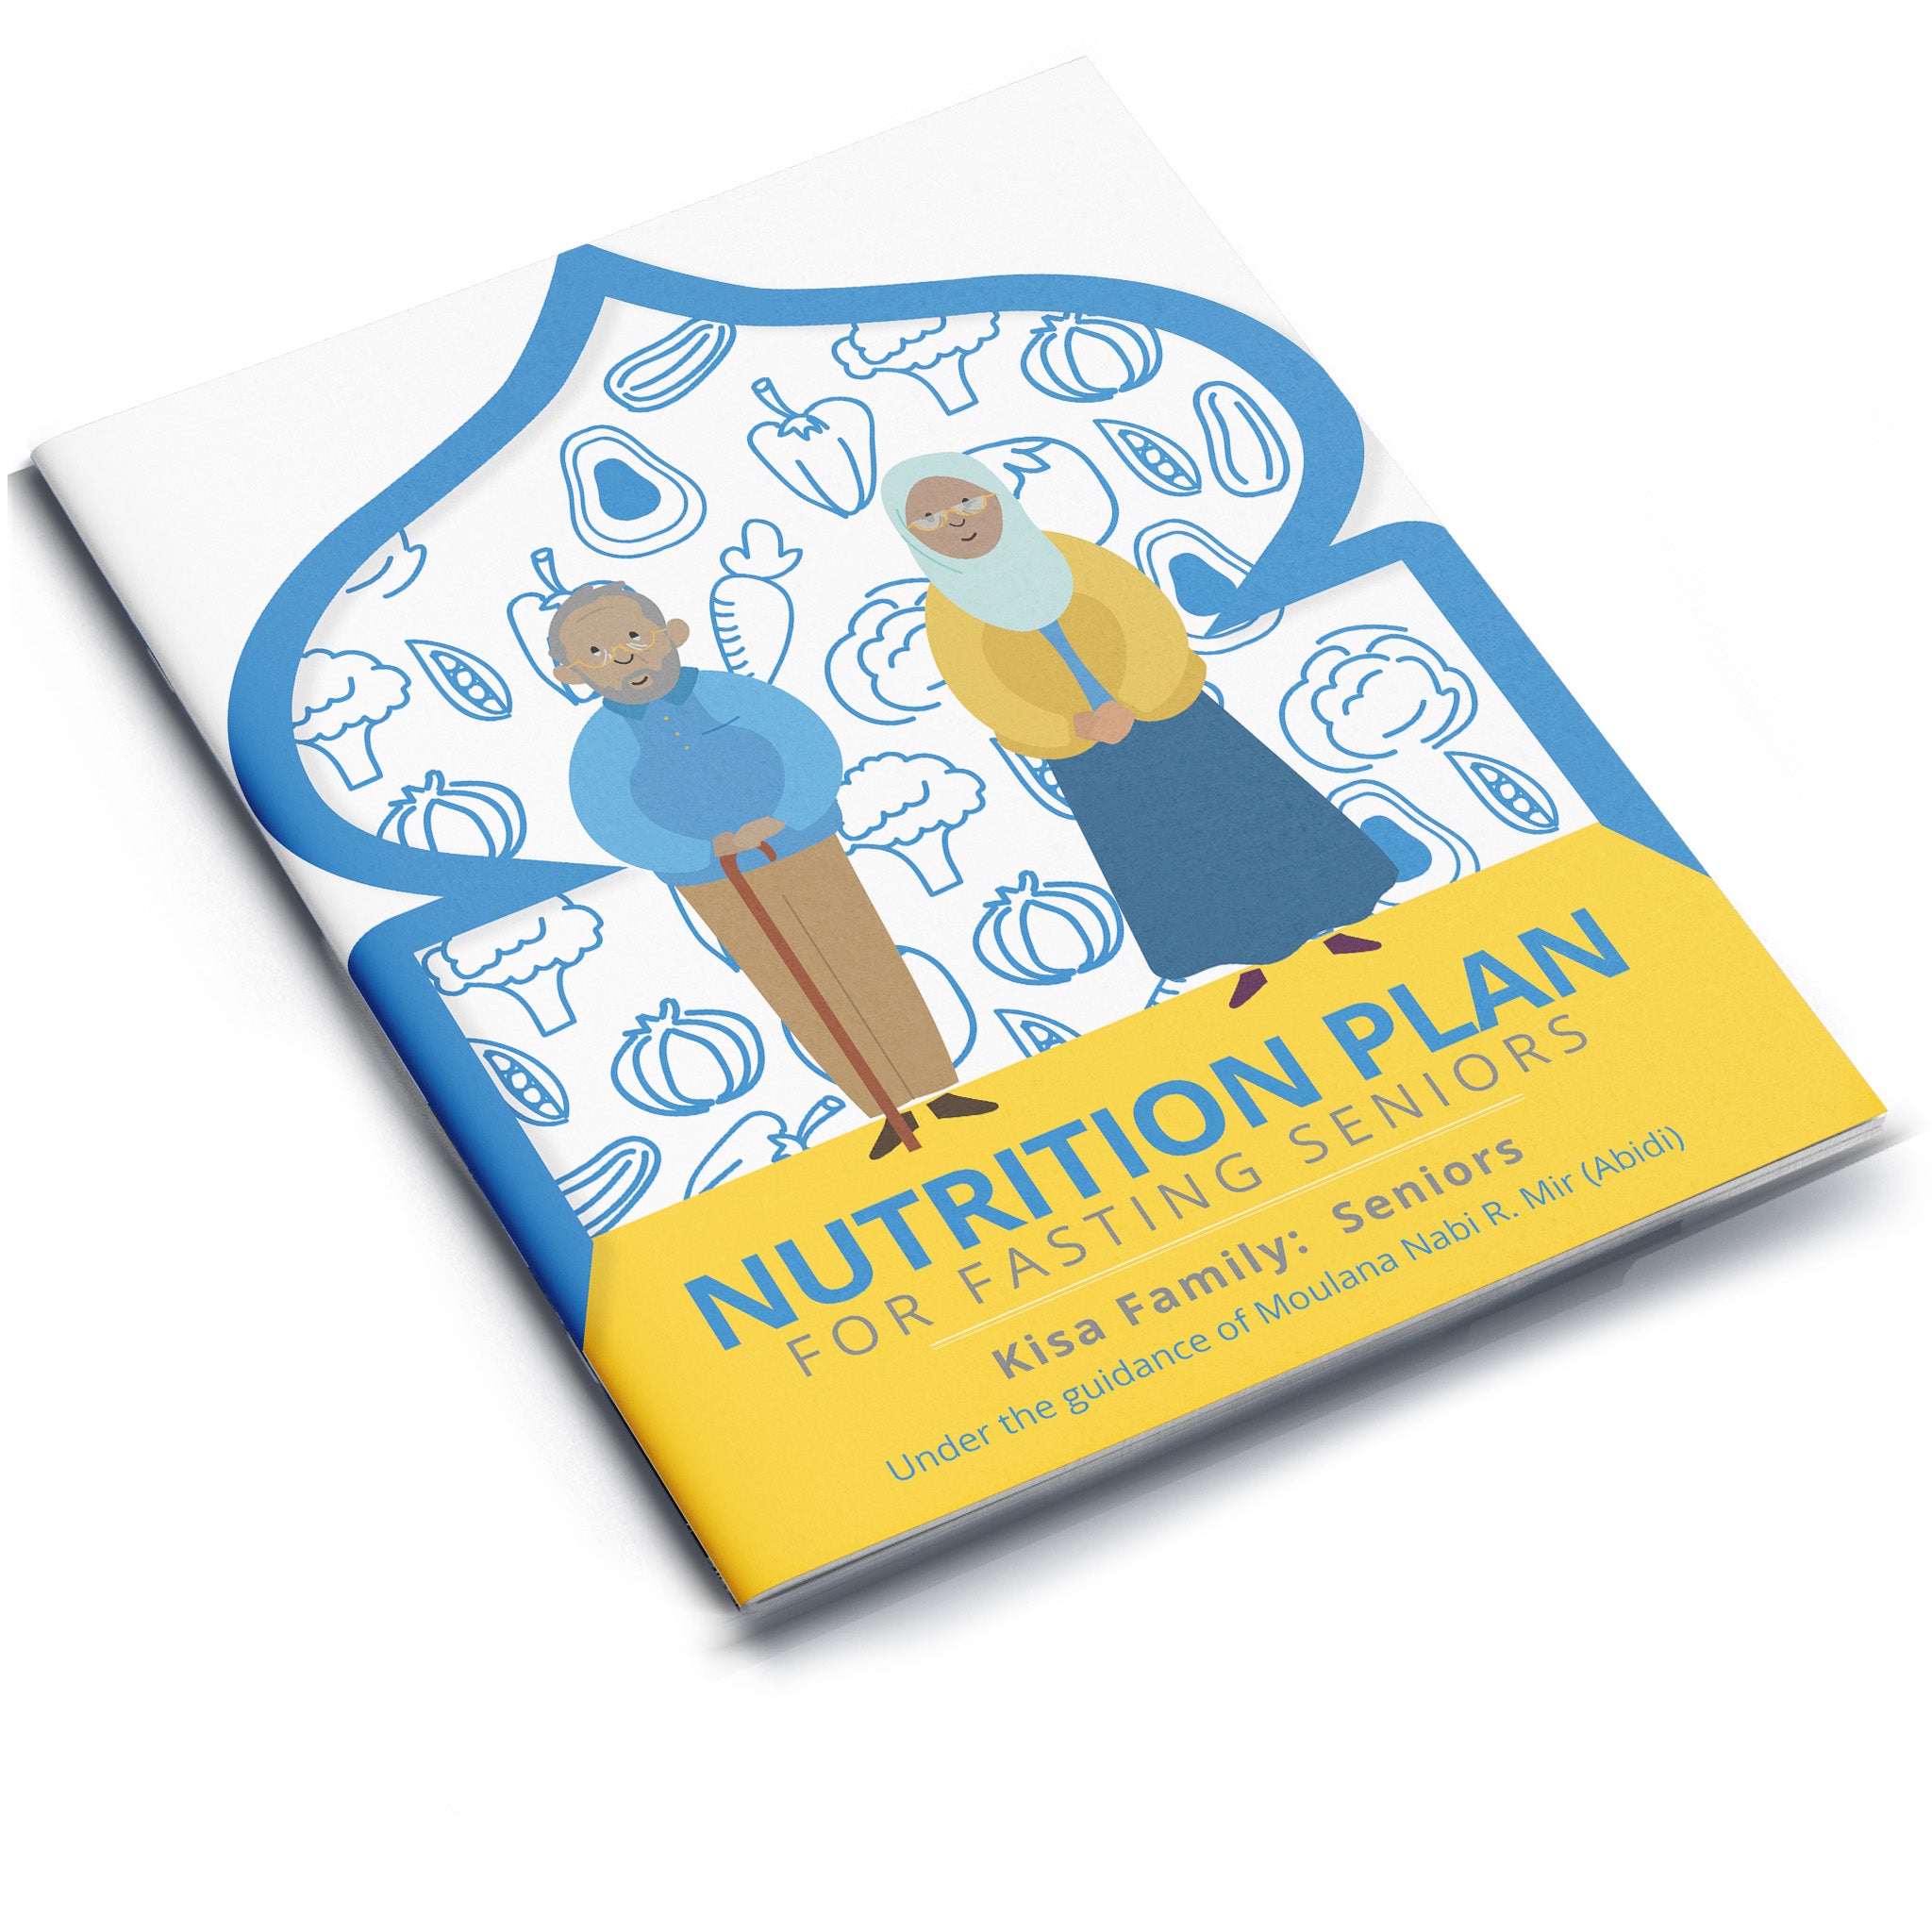 Nutrition Plan for Fasting Seniors